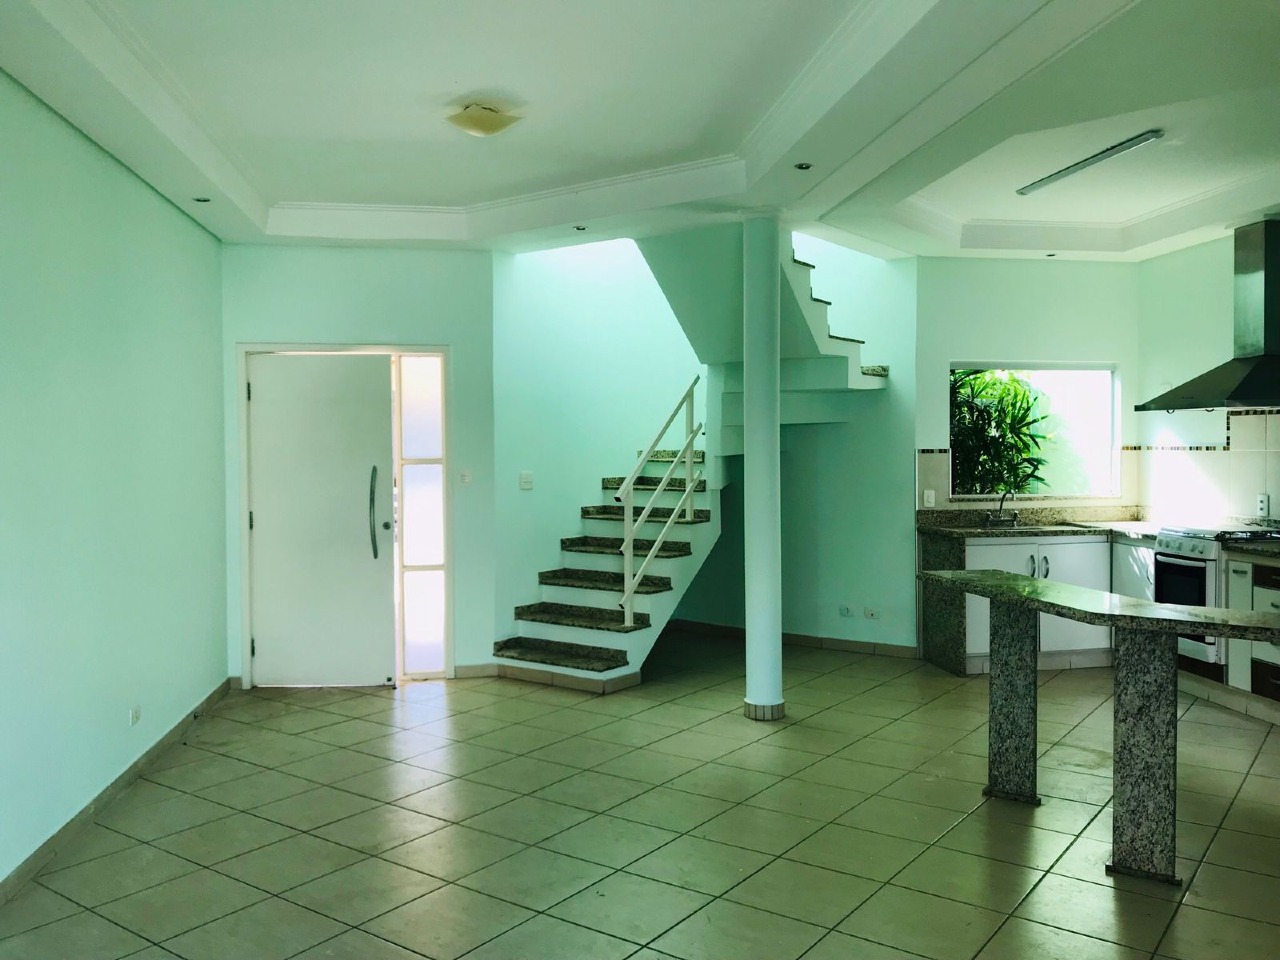 Casa em Condomínio para comprar, 3 quartos, 1 suíte, no bairro Morumbi em Piracicaba - SP